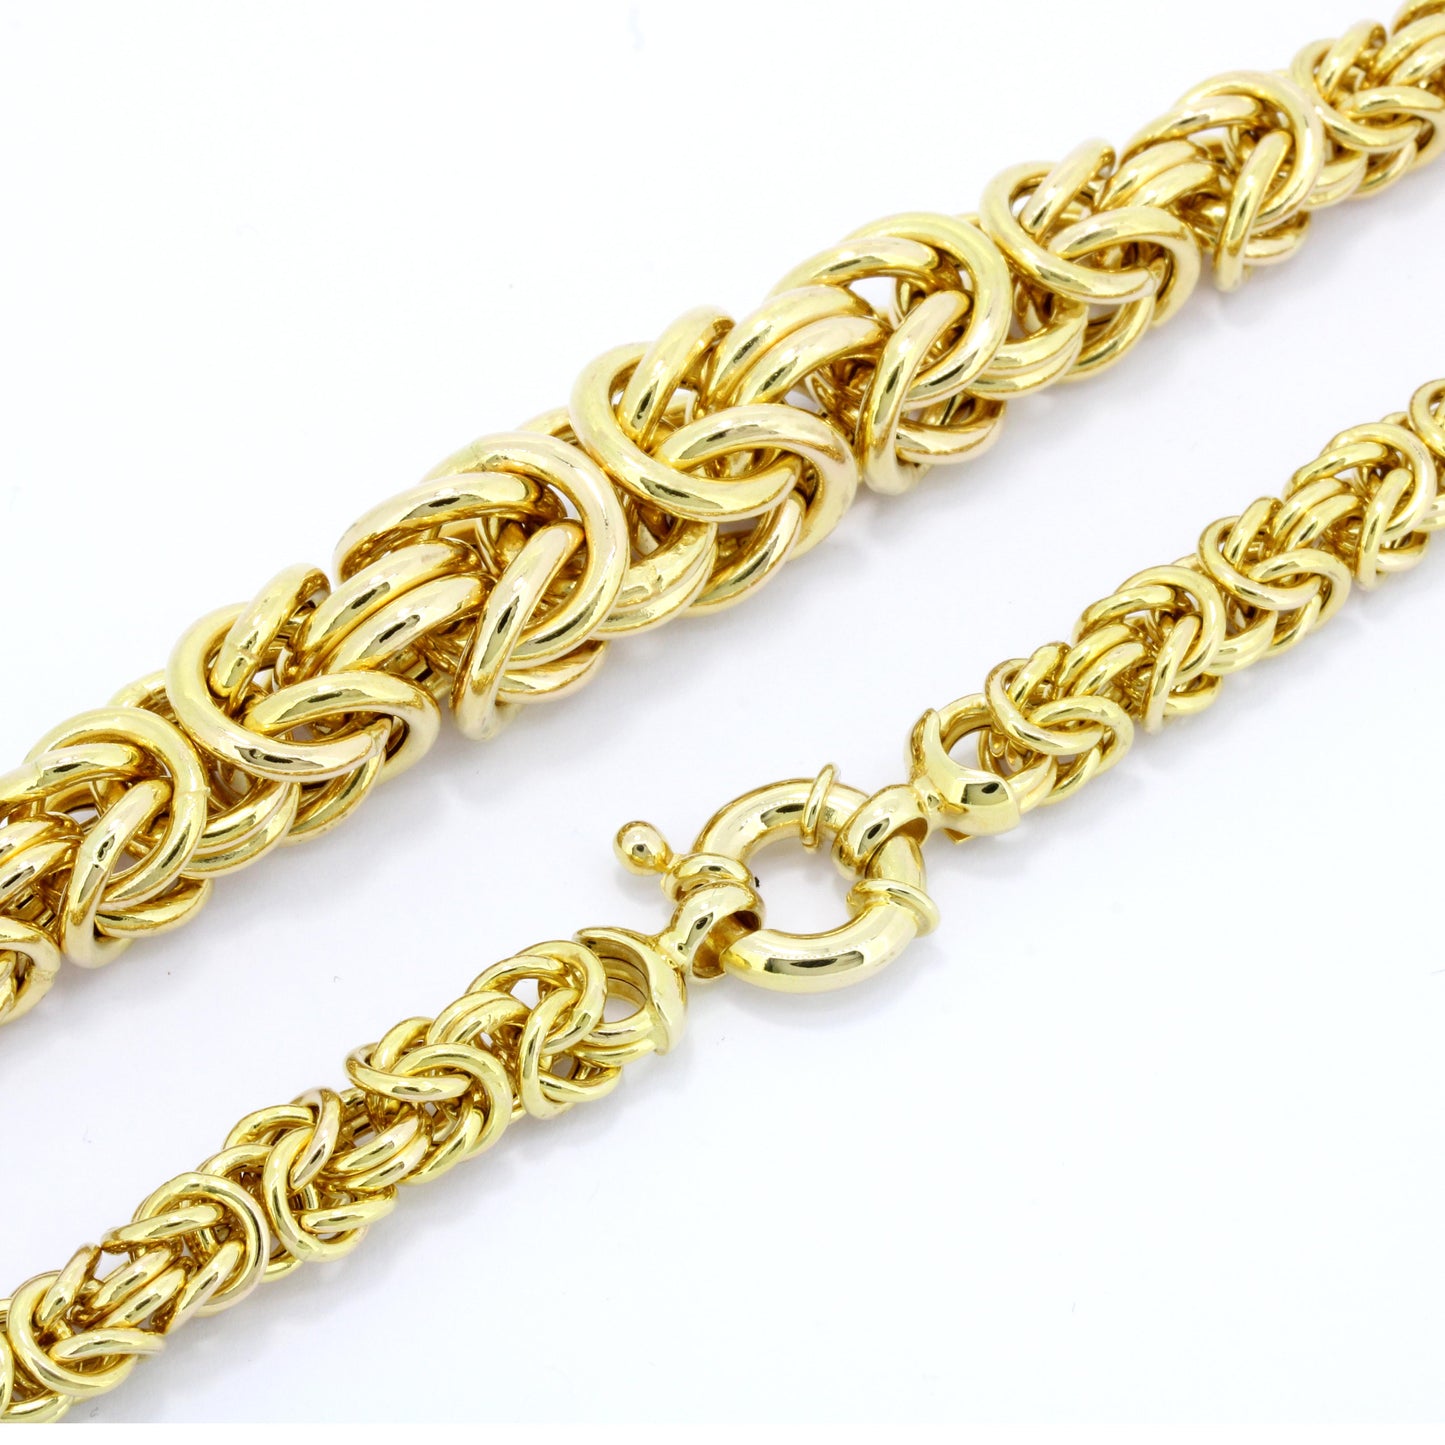 Halskette 585 Gold 14 Kt Kette im Verlauf 46 cm lang Wert 3400,-